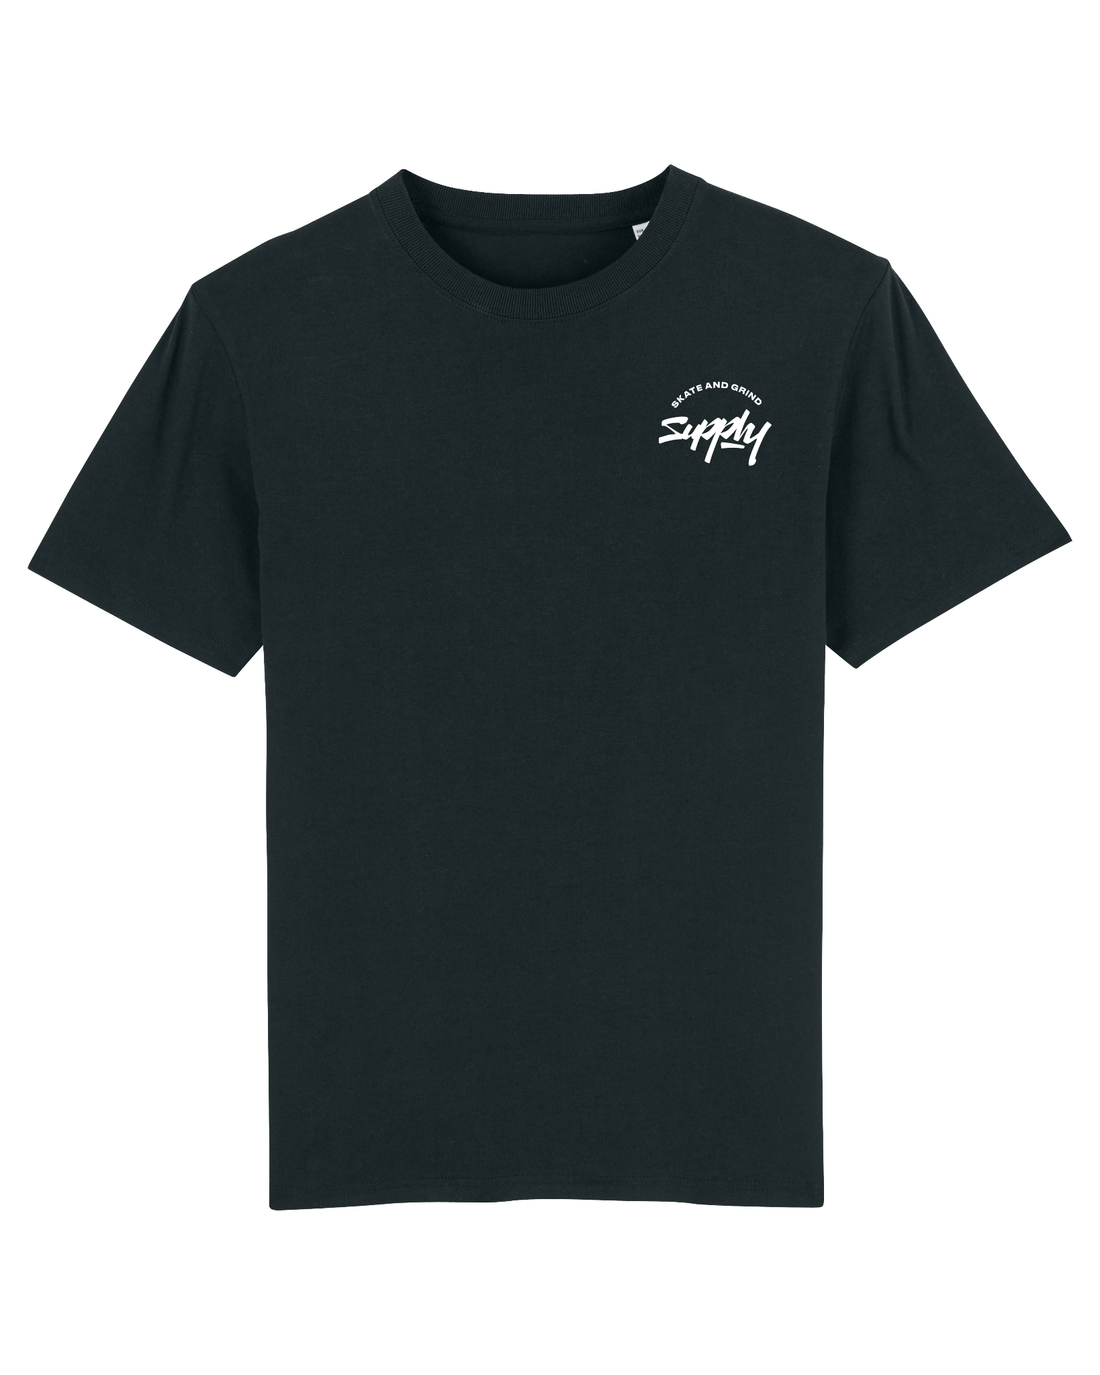 Black Skater T-Shirt, Skate and Grind Front Print